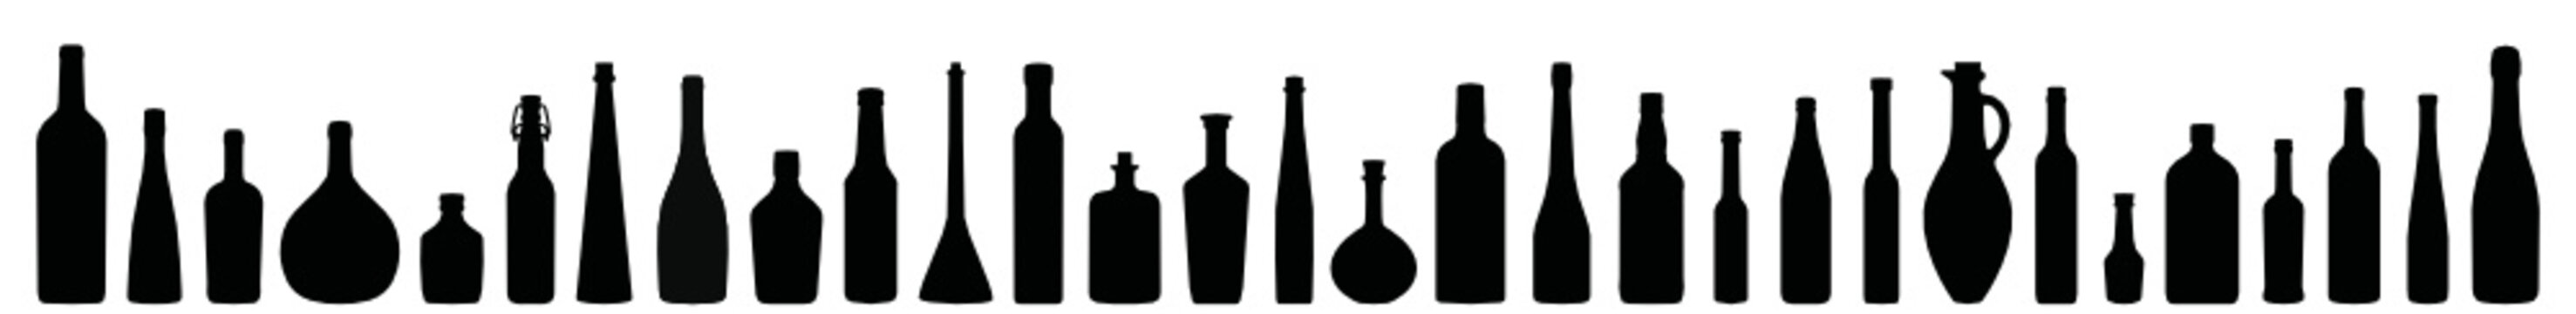 Flaschen Icons